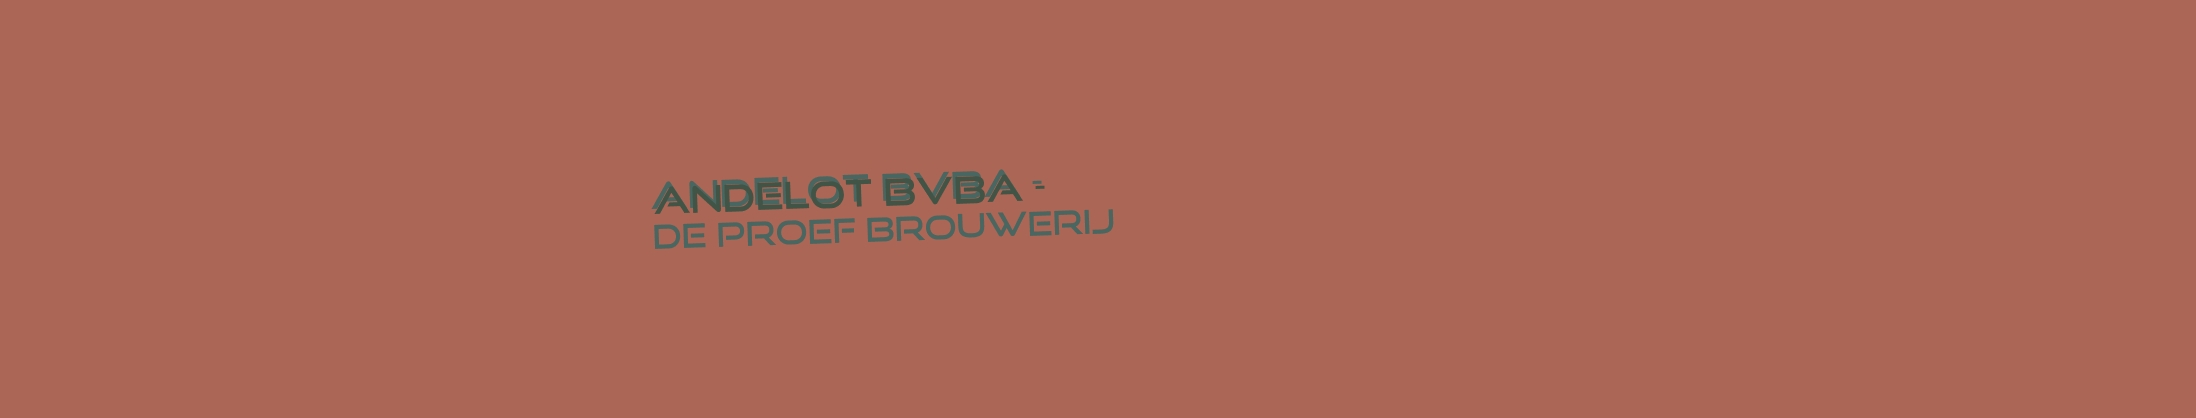 logo Andelot Bvba - De Proef Brouwerij